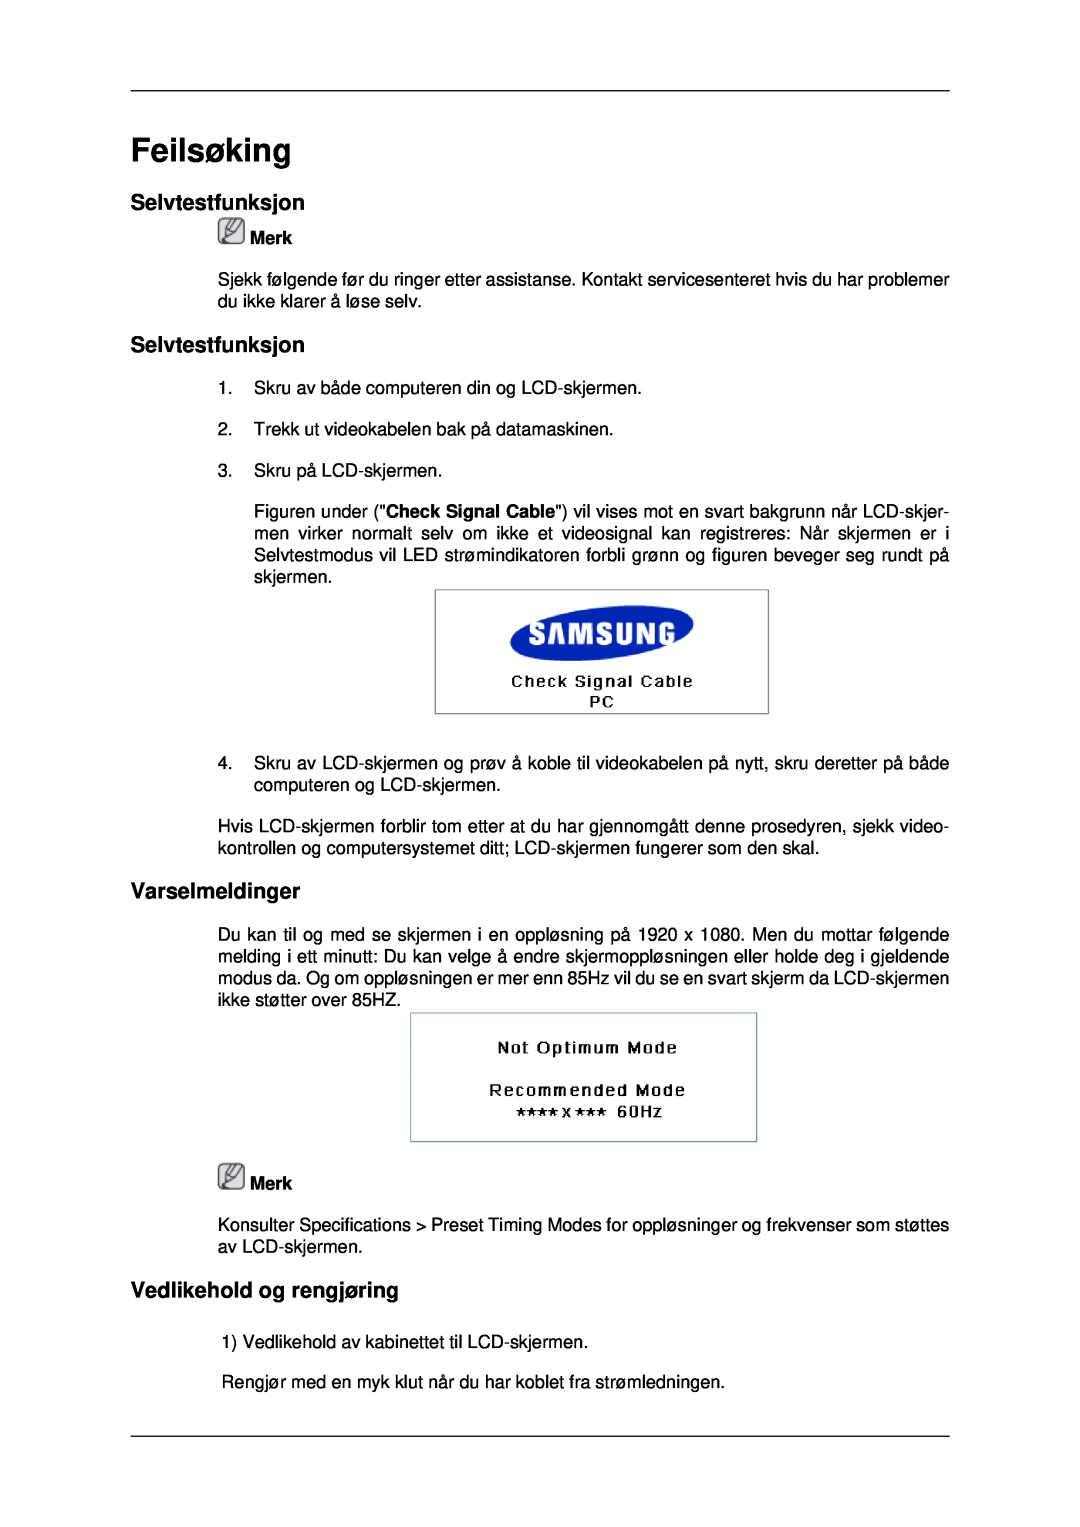 Samsung LH46MRTLBC/EN, LH46MRPLBF/EN manual Feilsøking, Selvtestfunksjon, Varselmeldinger, Vedlikehold og rengjøring, Merk 